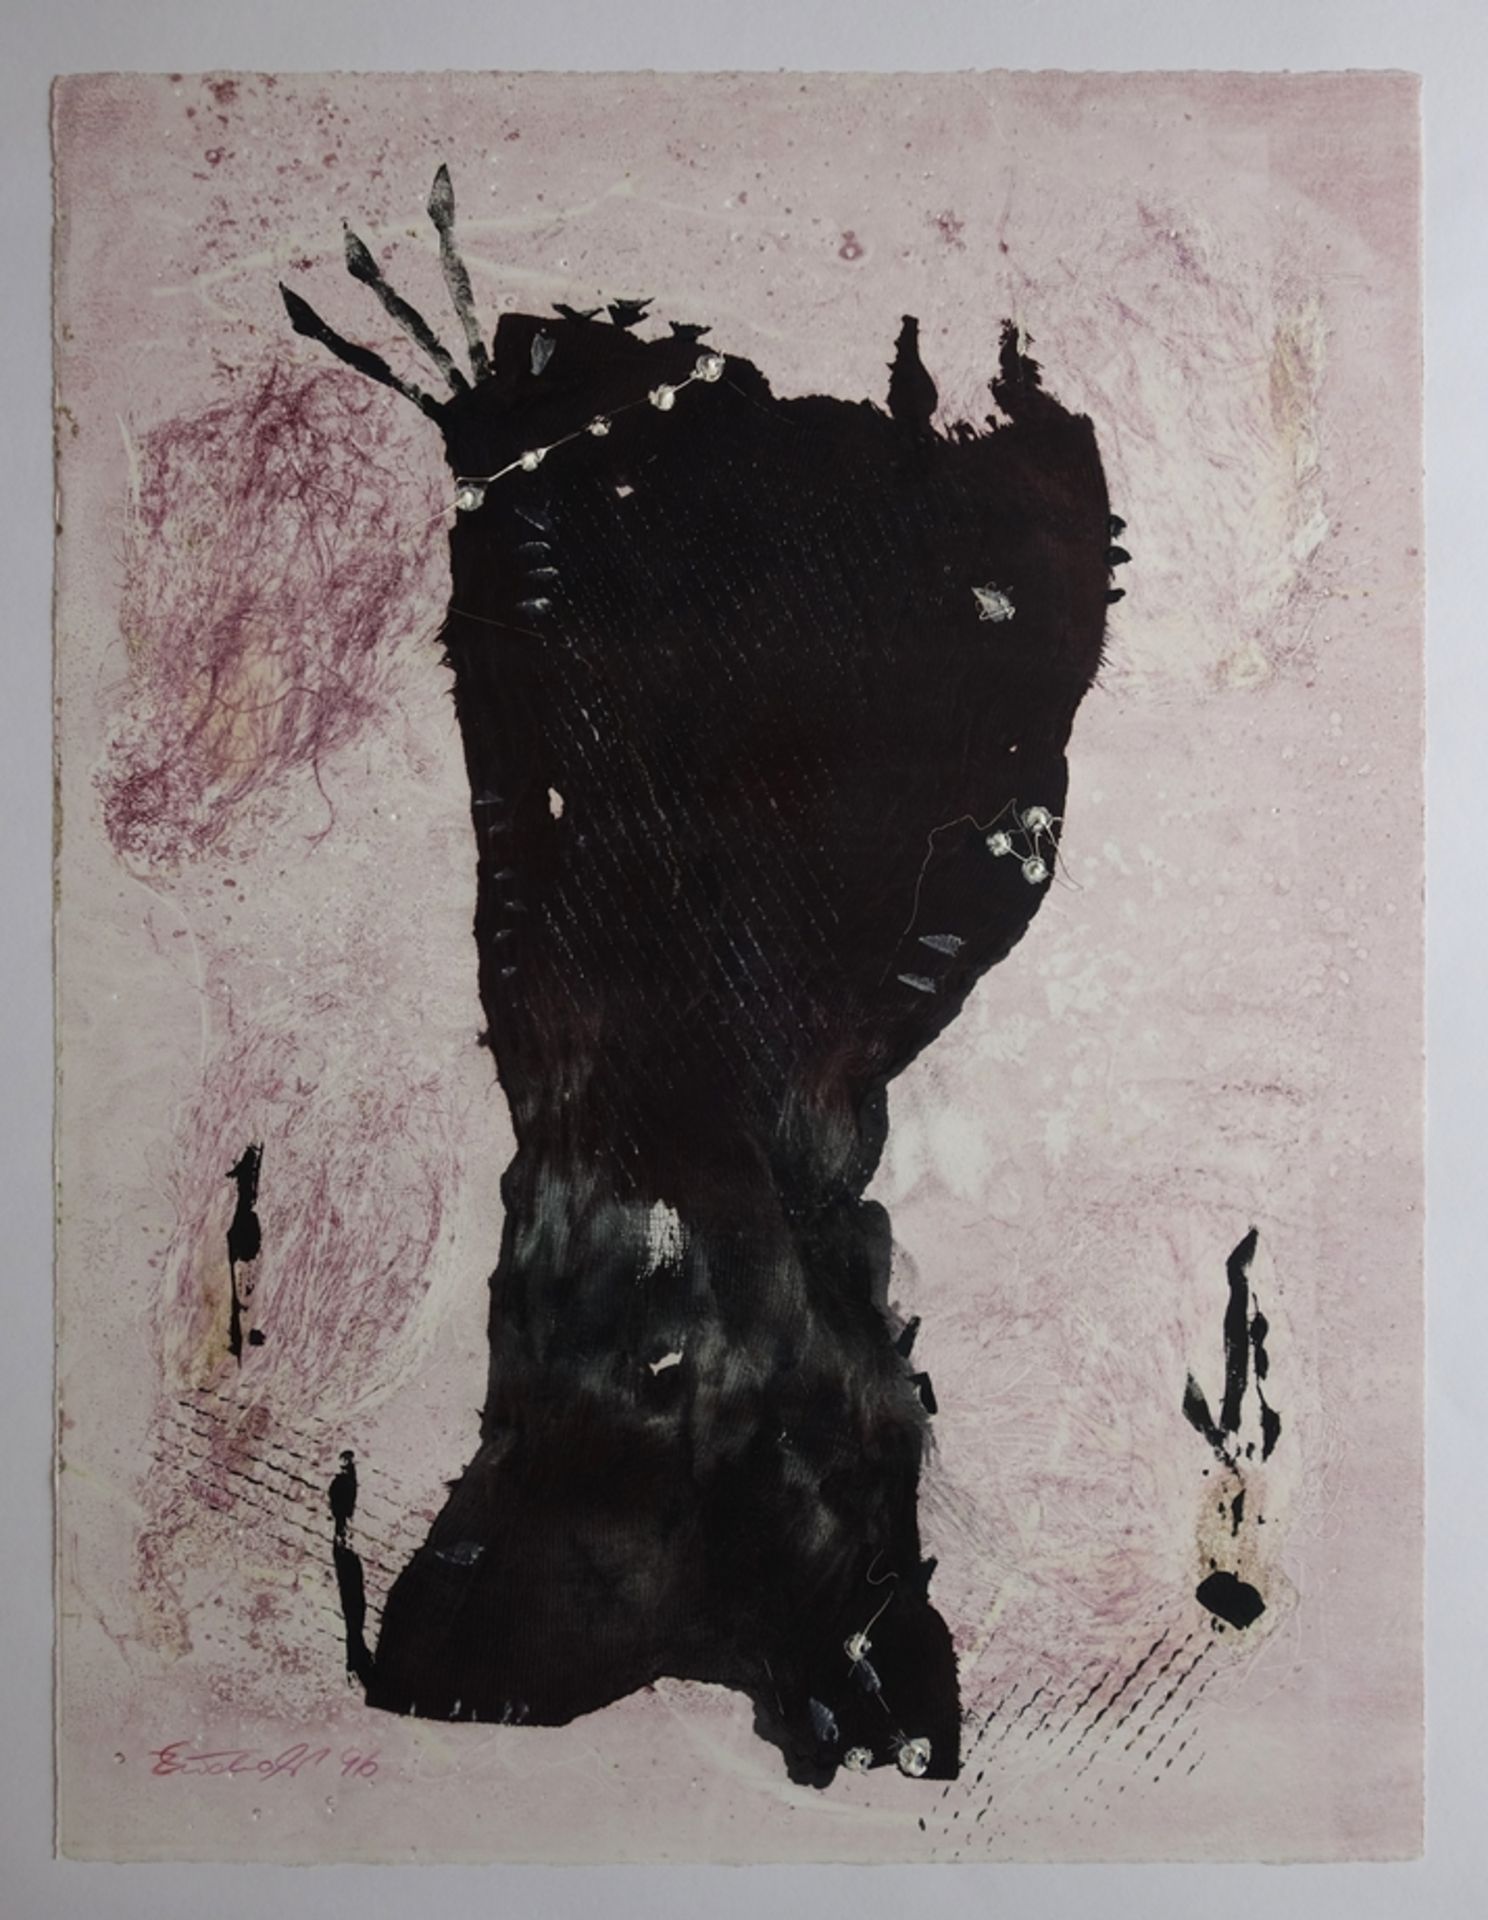 Erika Zuchold (1947, Lucka - 2015, Asunción, PRY), "Abstraktion in Schwarz-Violett", 1996, Monotypi